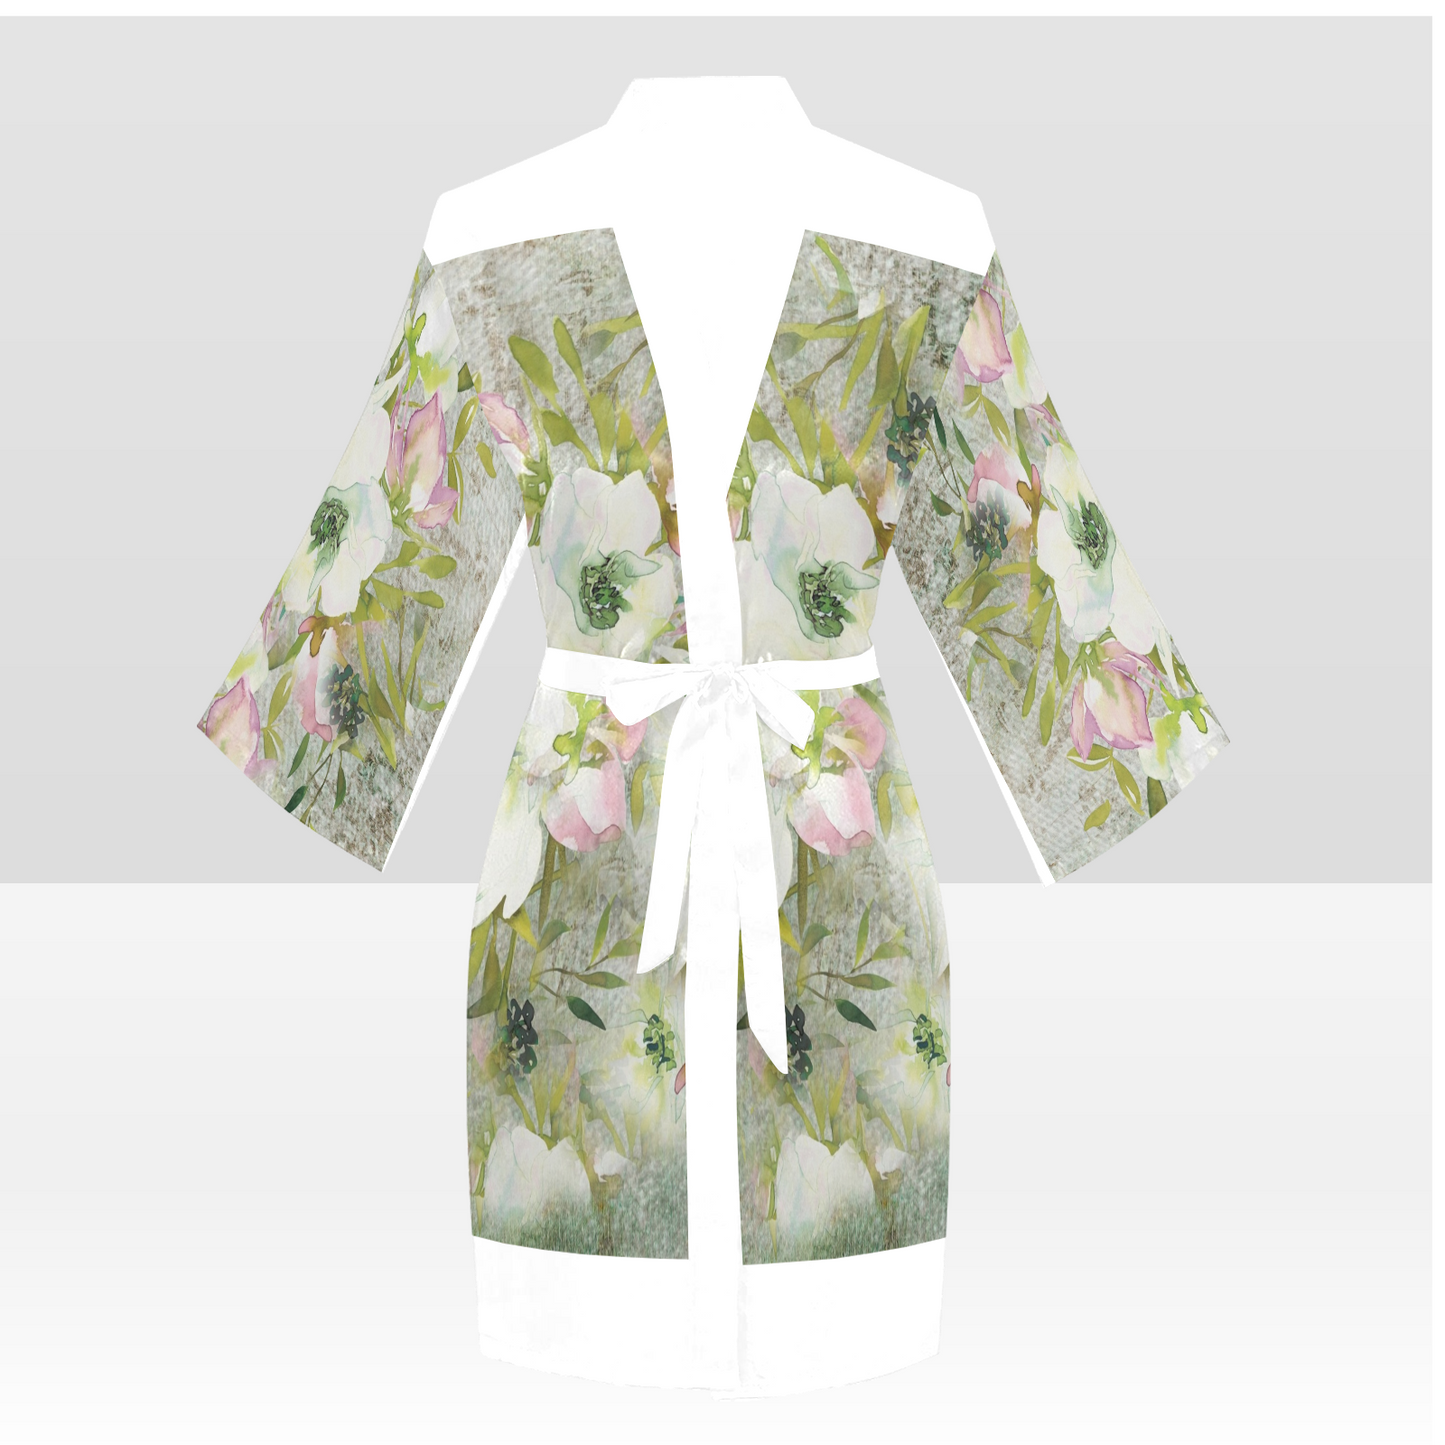 Vintage Floral Kimono Robe, Black or White Trim, Sizes XS to 2XL, Design 03